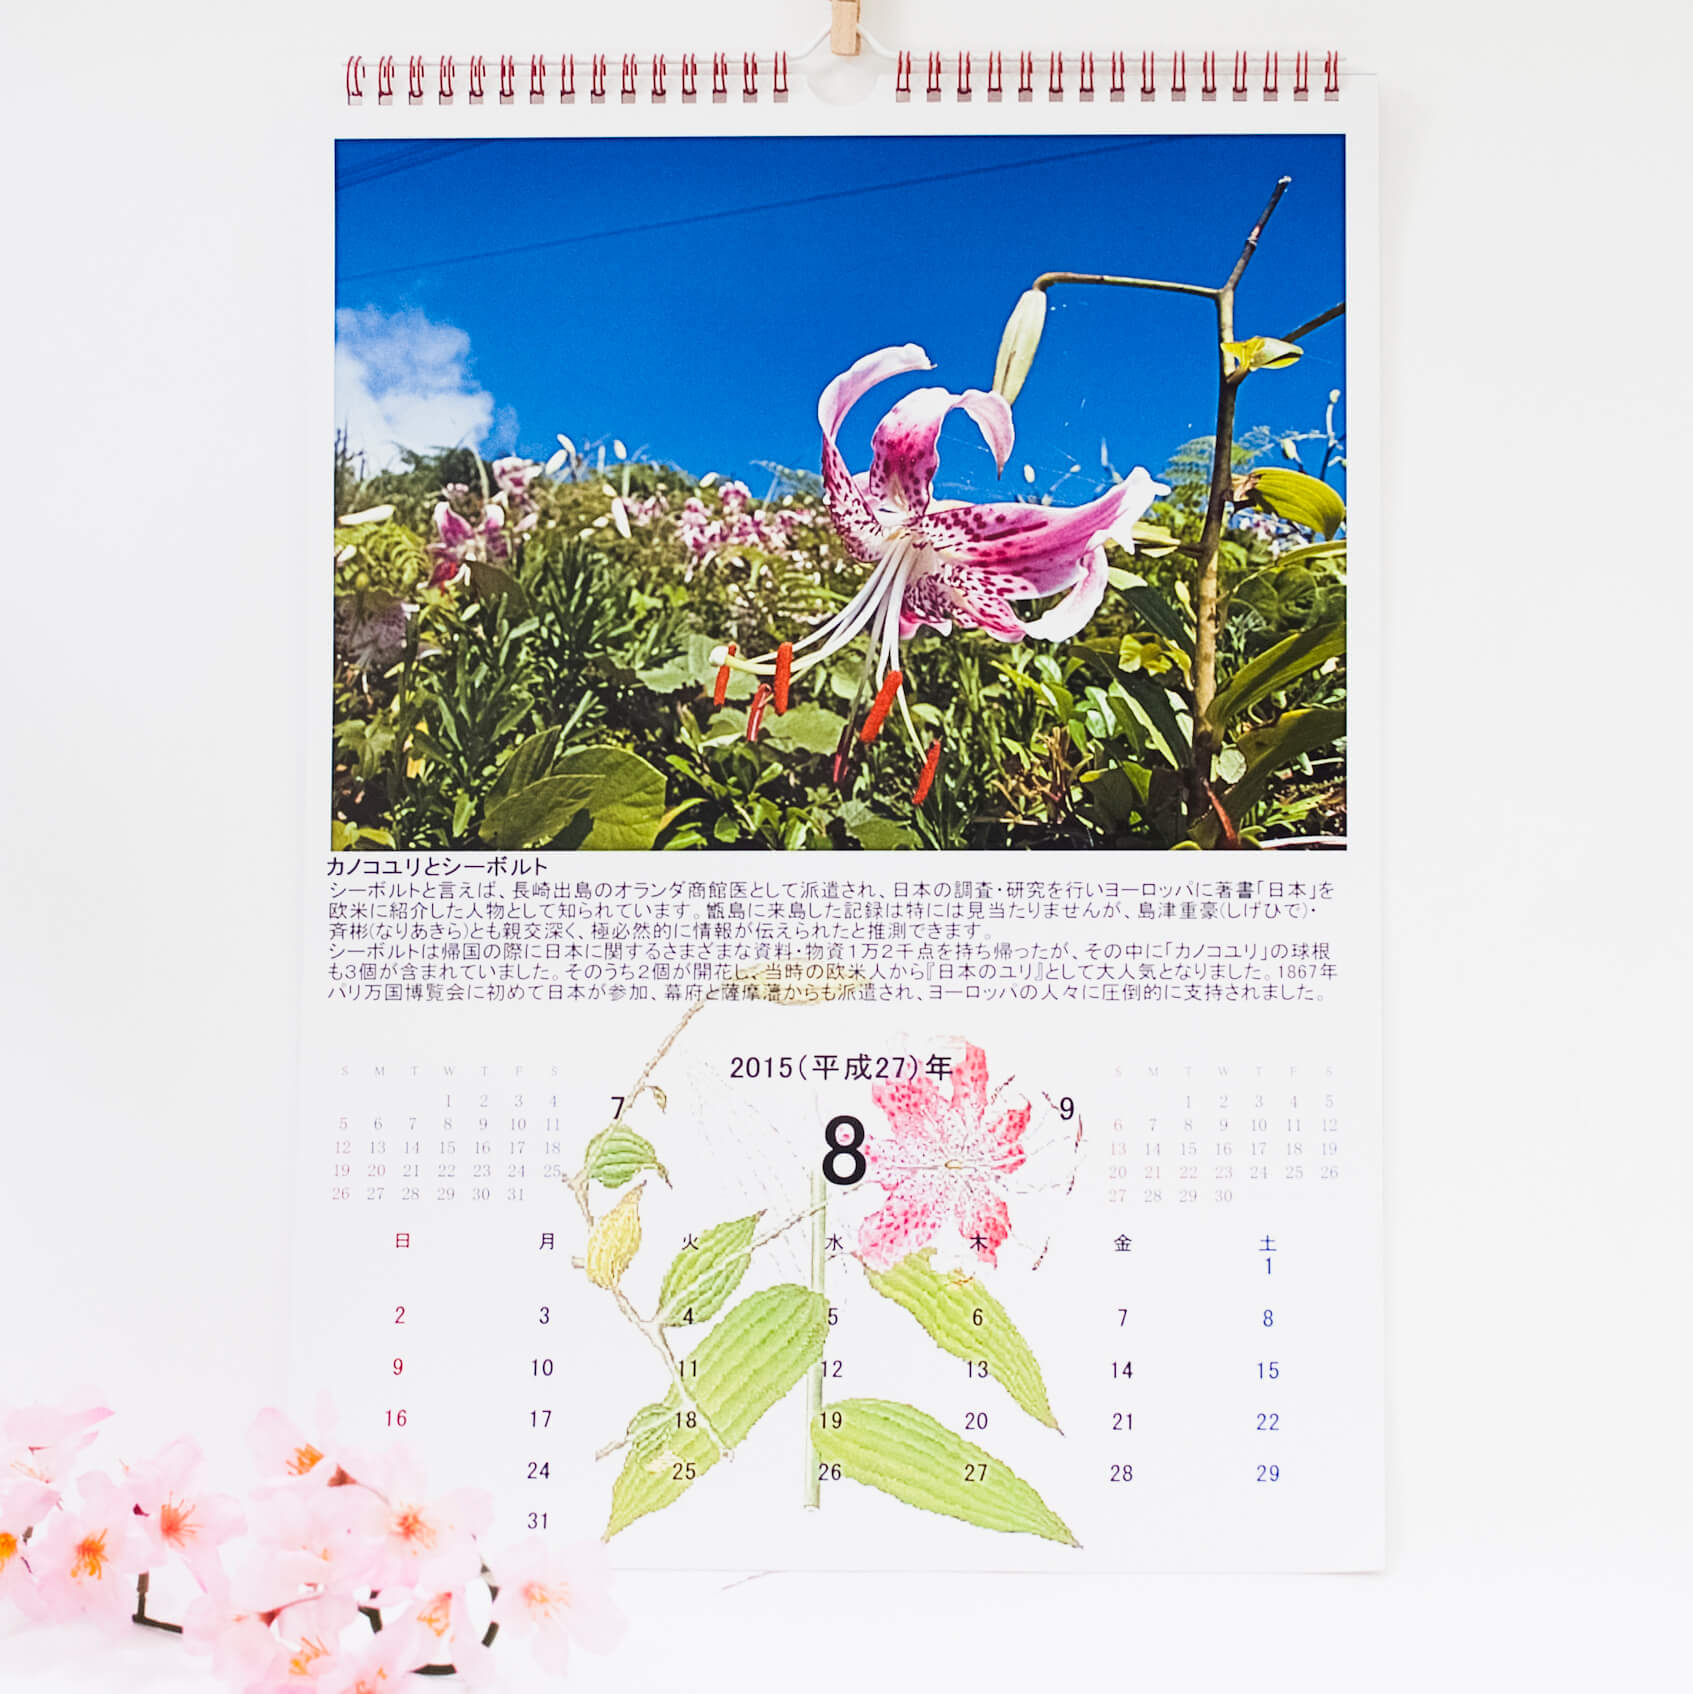 「後藤　和夫 様」製作のオリジナルカレンダー ギャラリー写真1